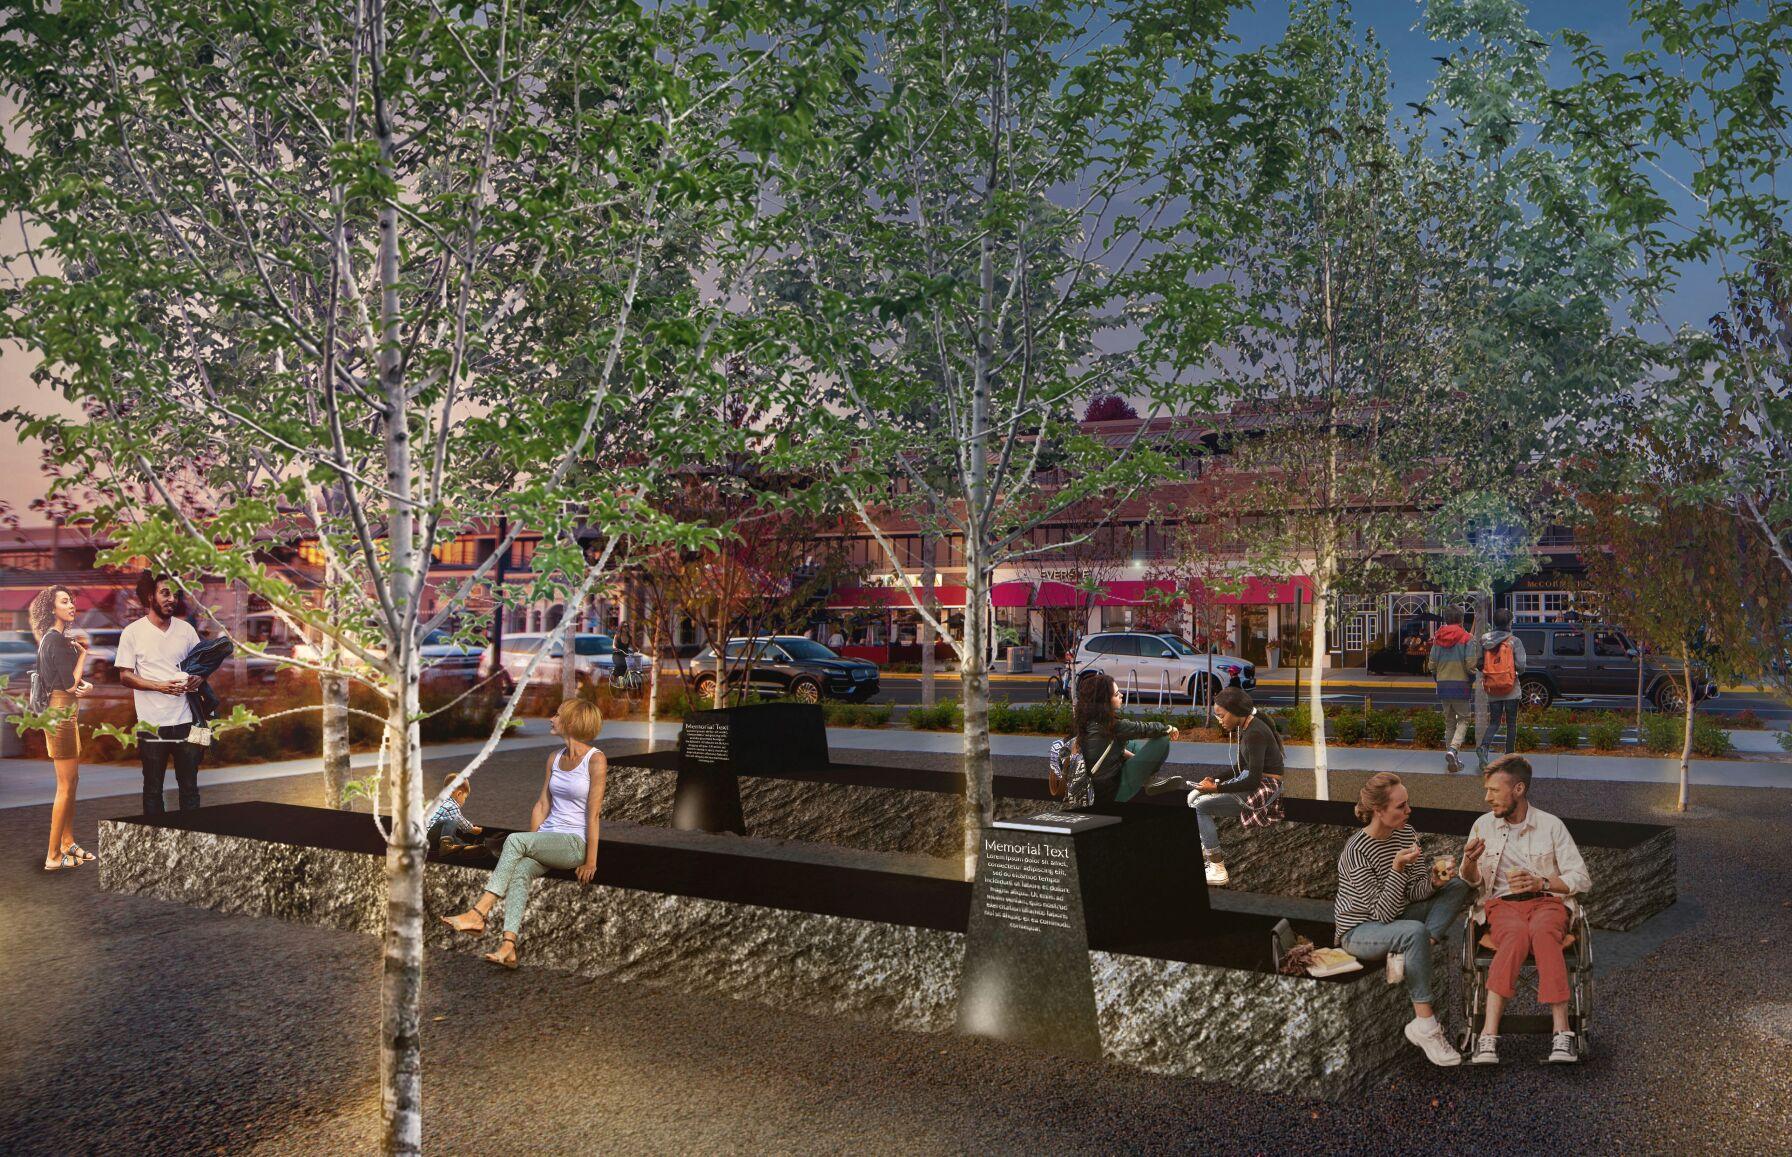 Wayzata Council approves design for 9/11 memorial